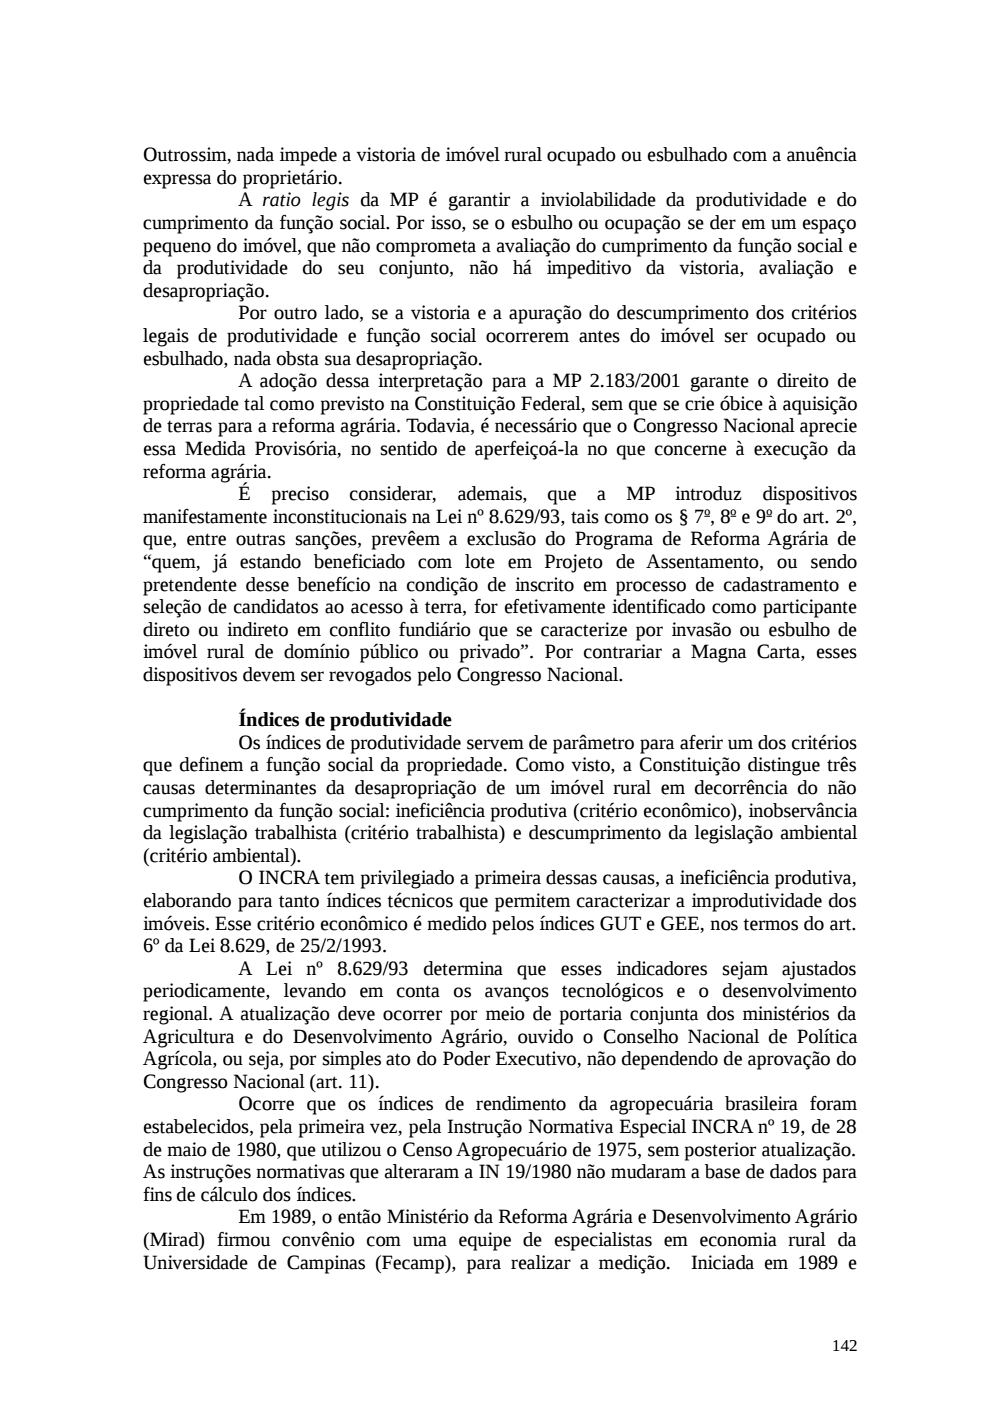 Page 142 from Relatório final da comissão